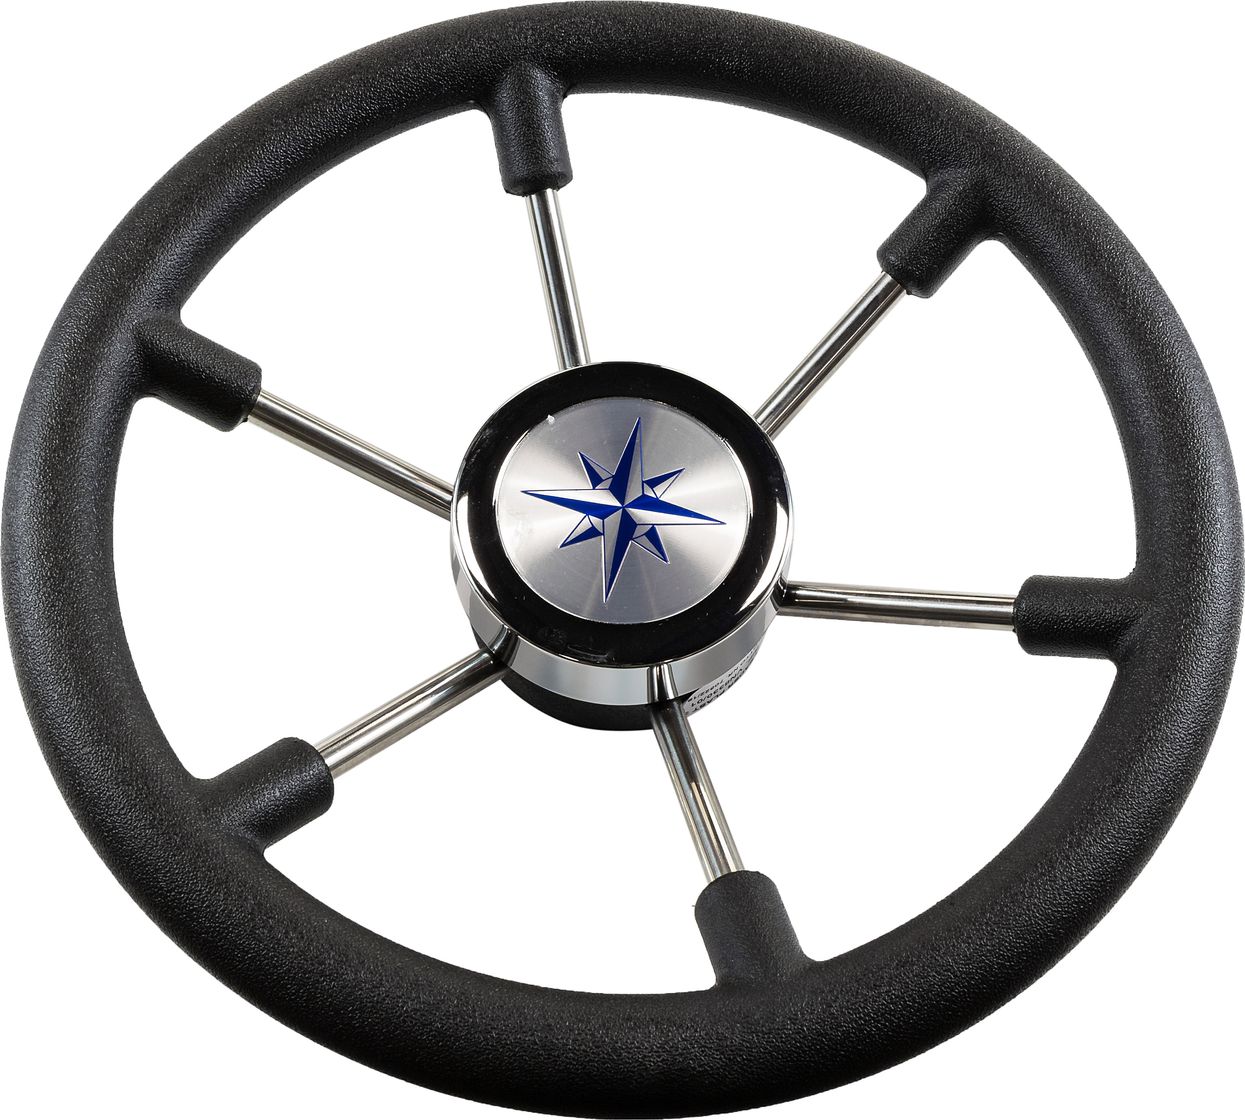 Рулевое колесо LEADER PLAST черный обод серебряные спицы д. 330 мм VN8330-01 рулевое колесо orion обод черносиний спицы серебряные д 355 мм vn960101 99